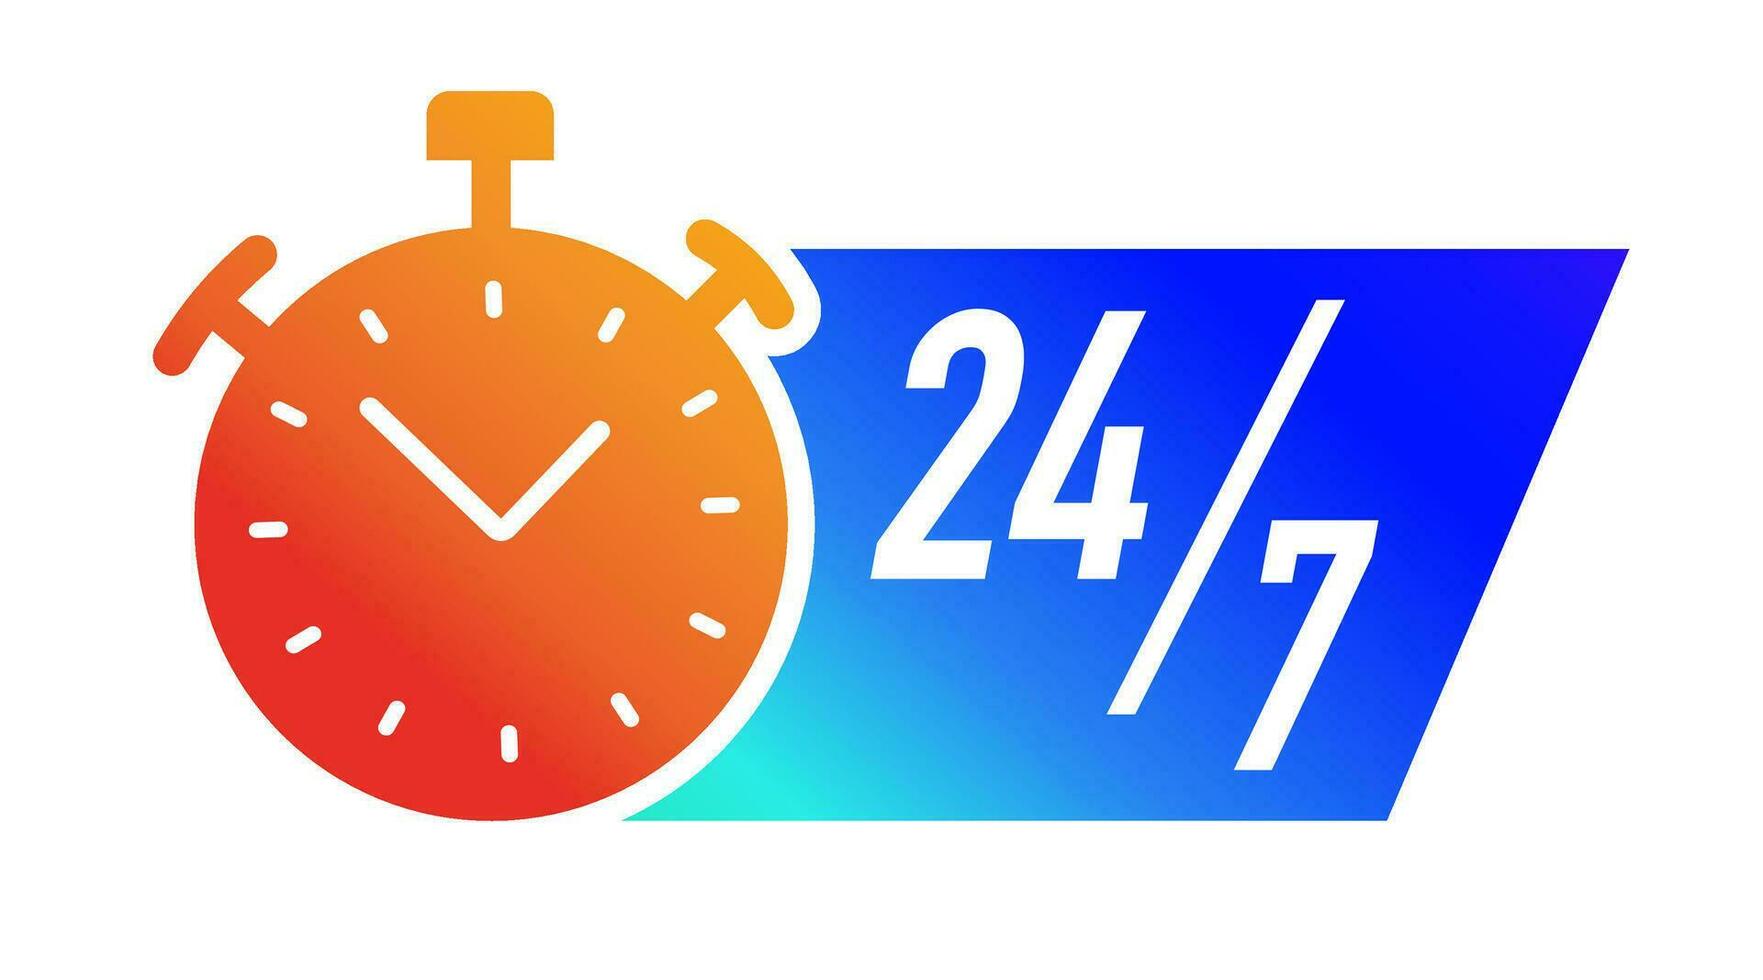 24 7 ore Timer simbolo colore stile vettore